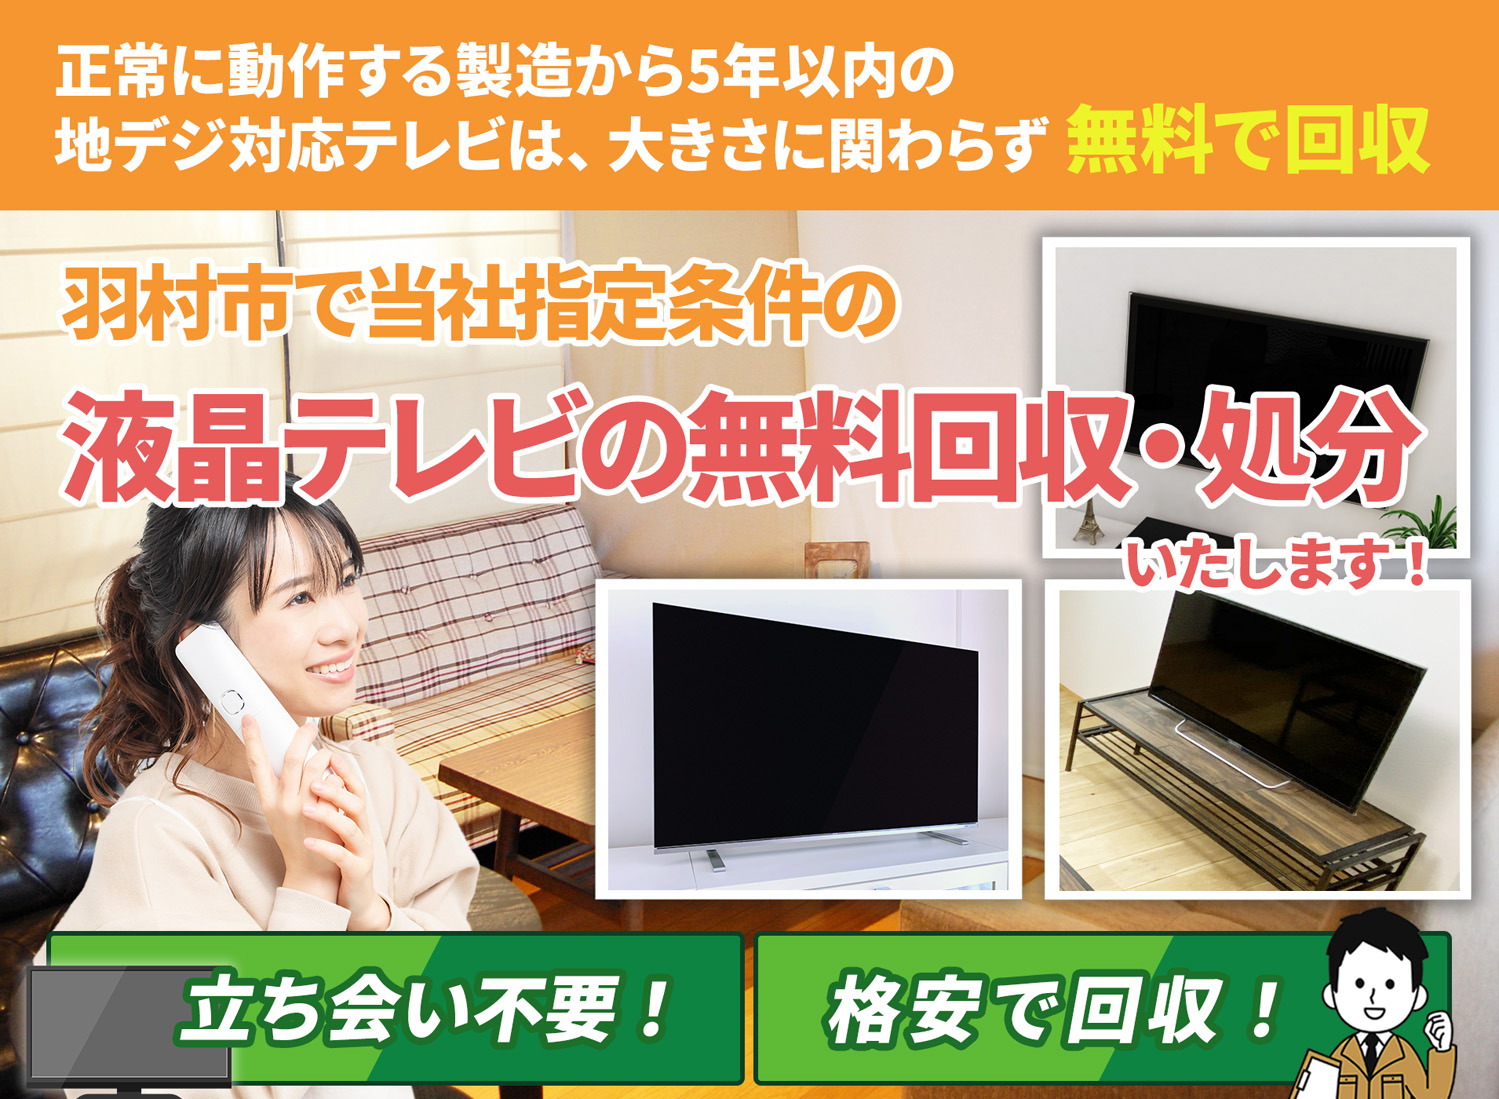 羽村市のサービスで地域一番を目指す液晶テレビ無料回収処分隊の液晶テレビ無料回収サービス